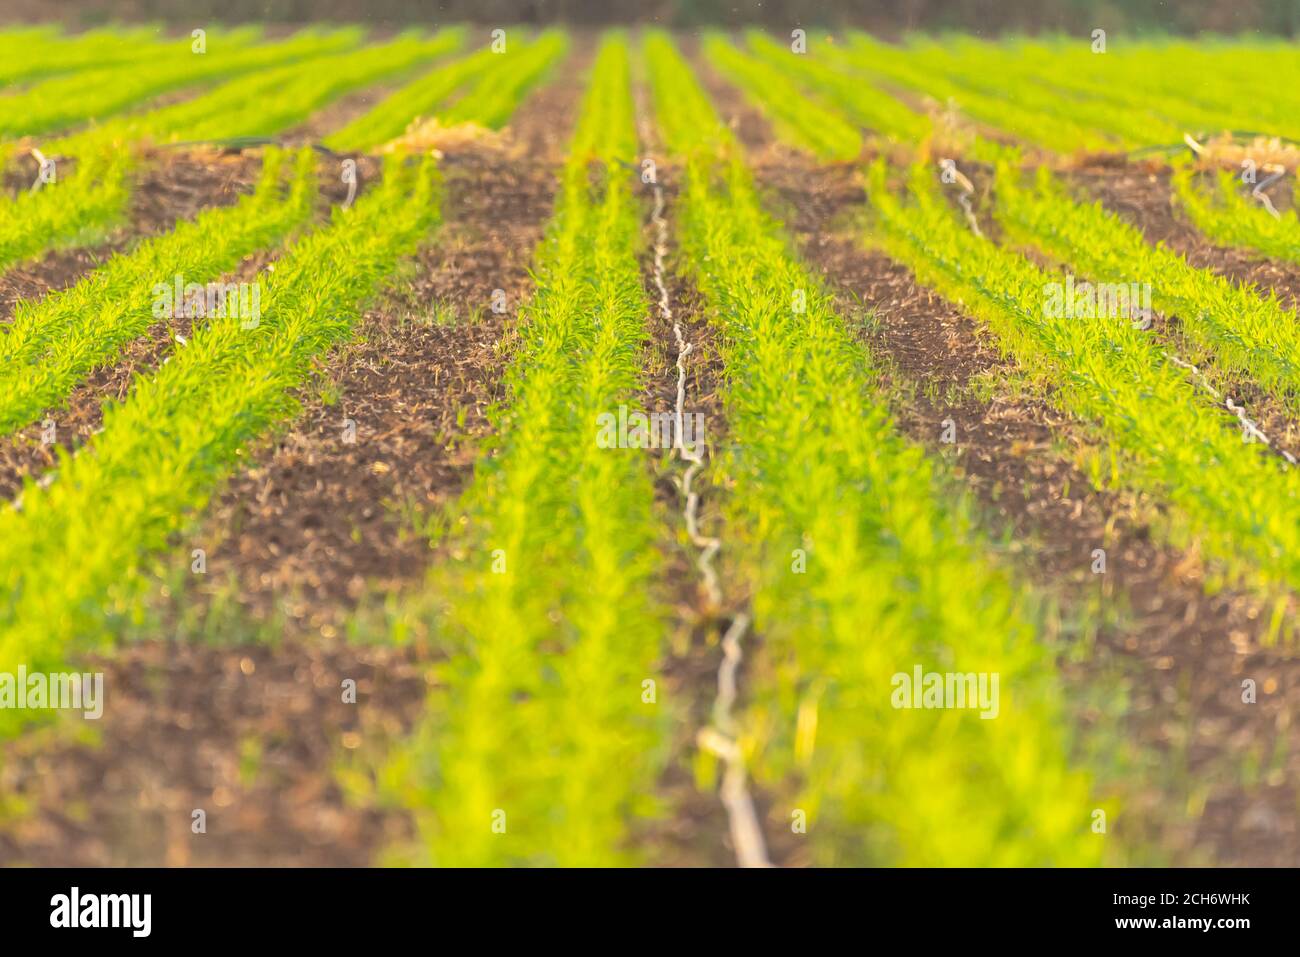 Gli sprinkler vengono utilizzati per irrigare giovani piantine in un campo agricolo. Fotografato in Israele Foto Stock